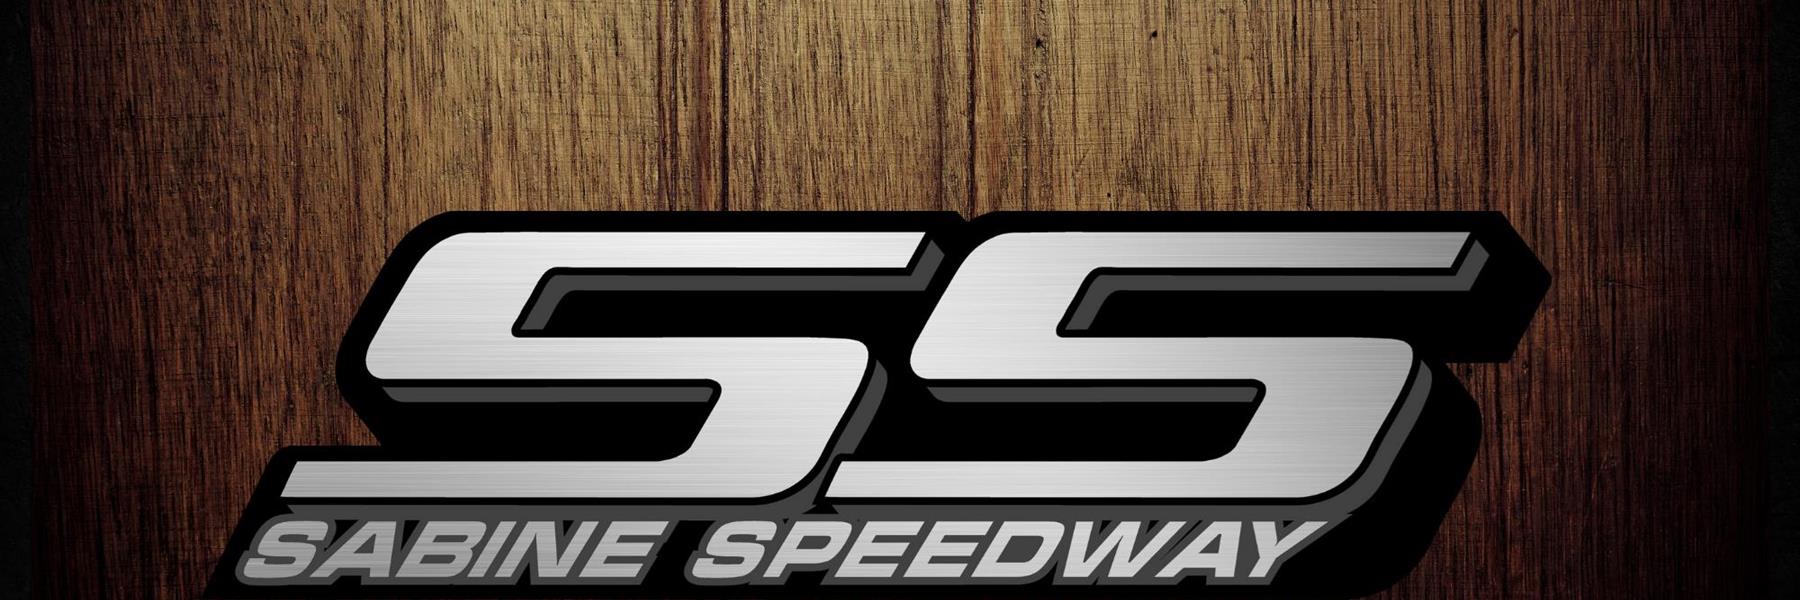 5/26/2022 - Sabine Speedway